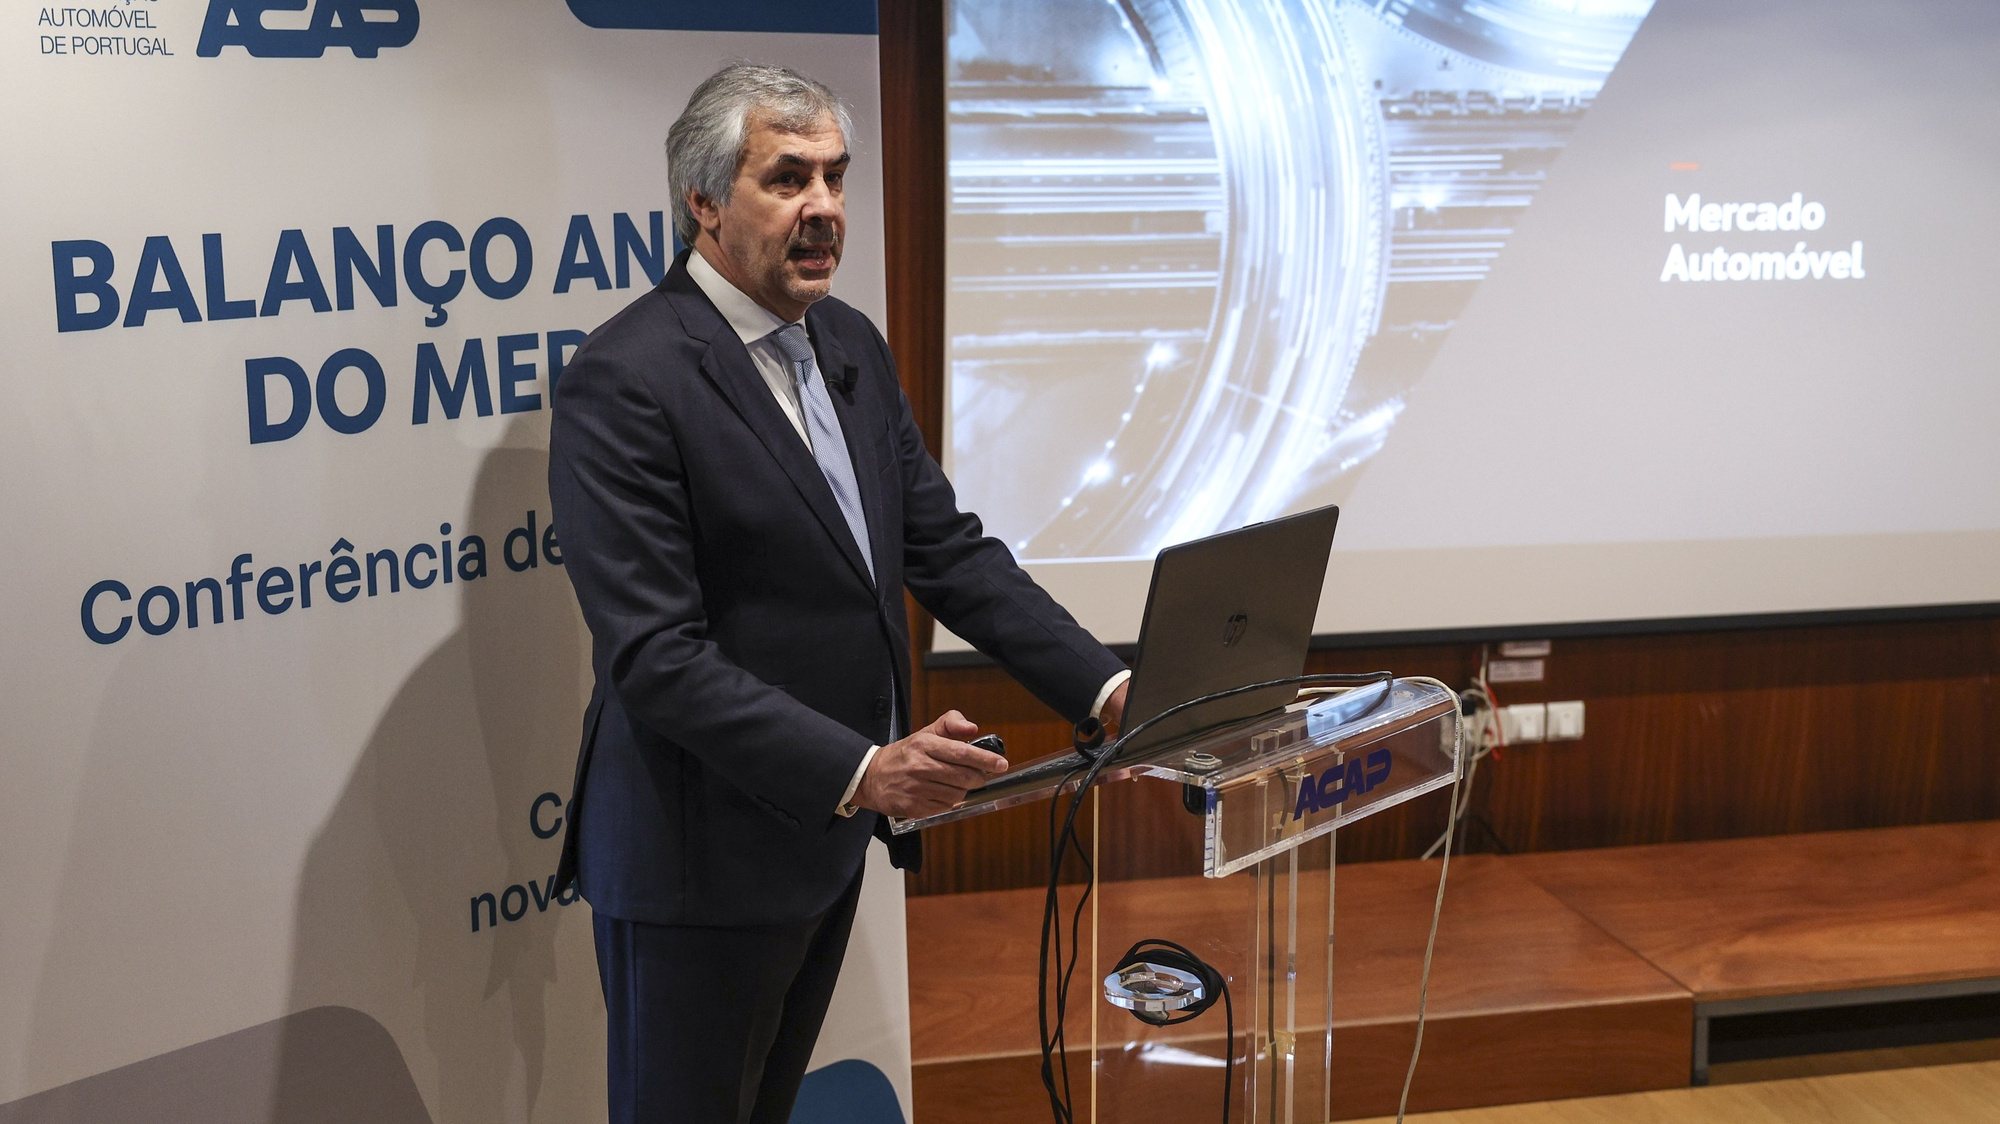 O secretário-geral da Associação Automóvel de Portugal (ACAP), Hélder Pedro, intervém na apresentação balanço anual do mercado automóvel, esta manhã na sede da ACAP, em Lisboa, 15 de  fevereiro de 2023. MIGUEL A. LOPES/LUSA